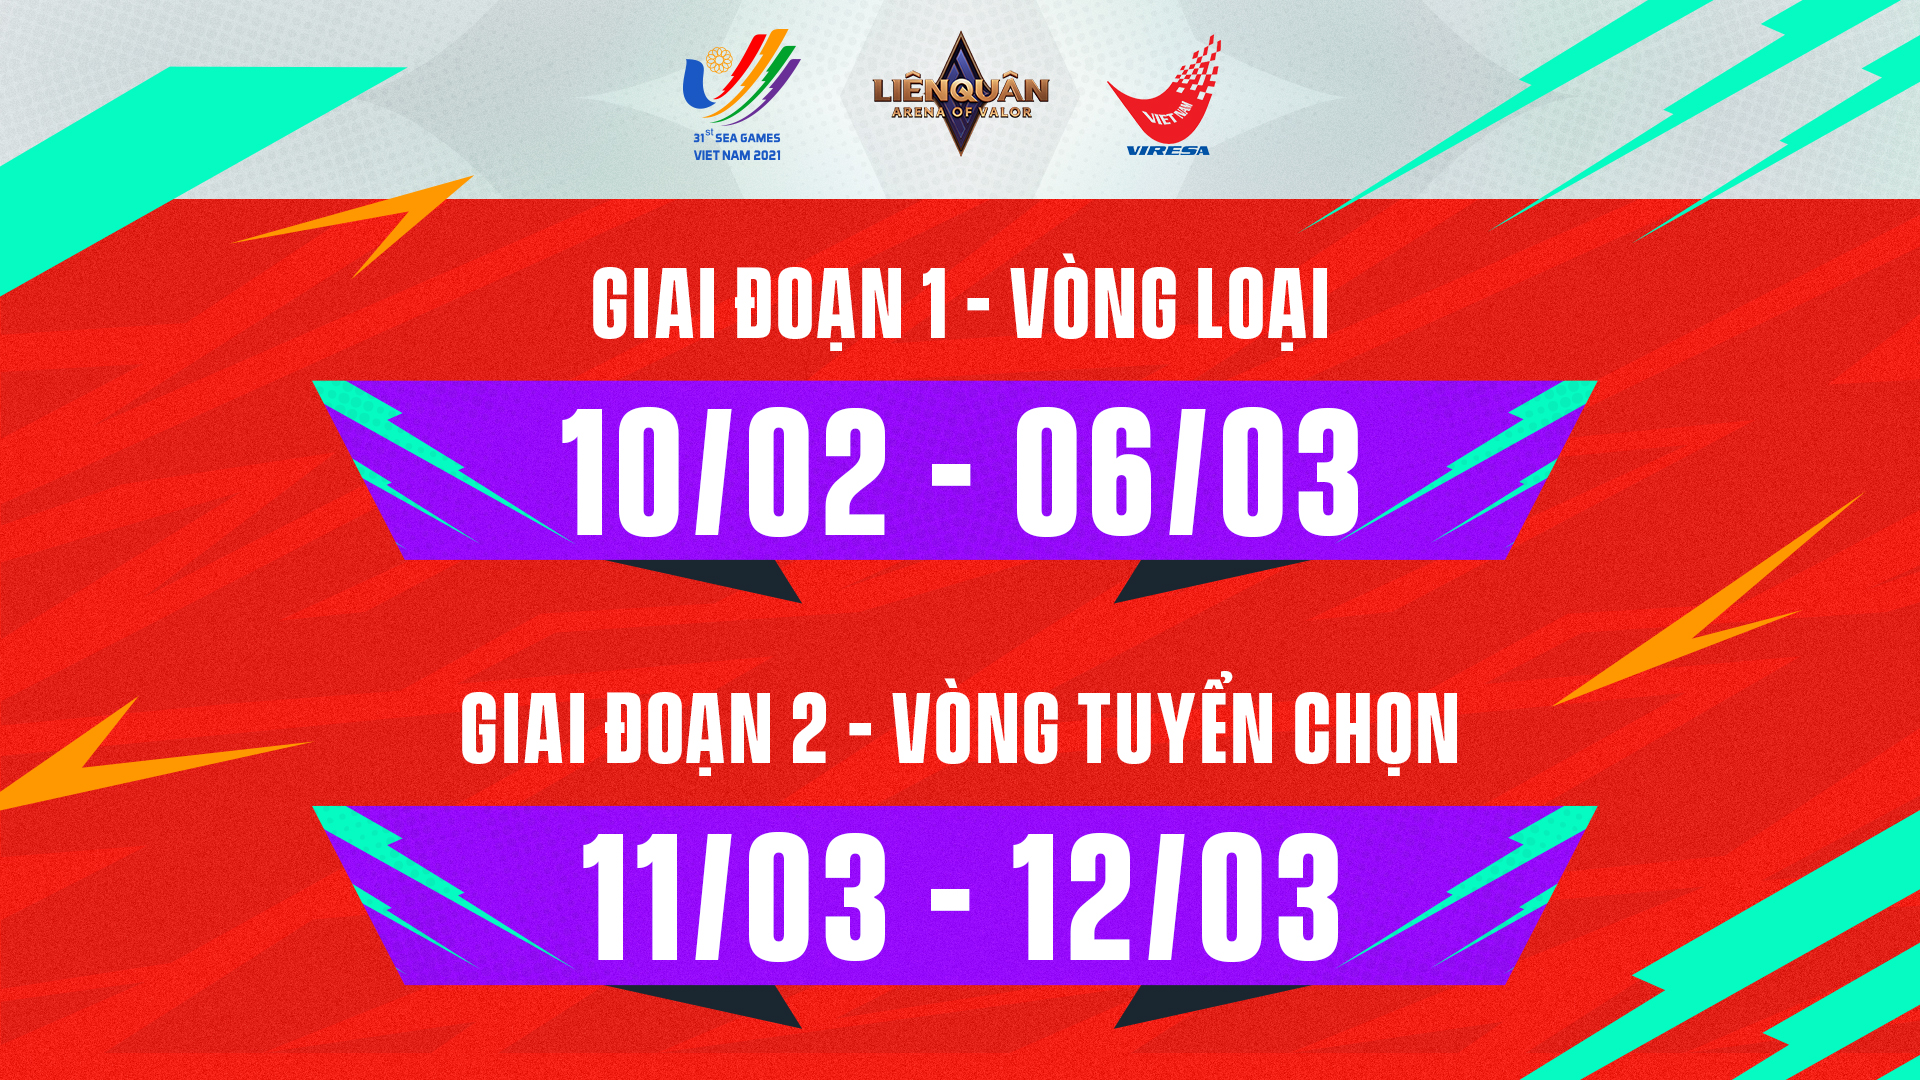 Công bố vòng tuyển chọn đội tuyển Liên Quân Mobile Việt Nam tham dự SEA Games 31